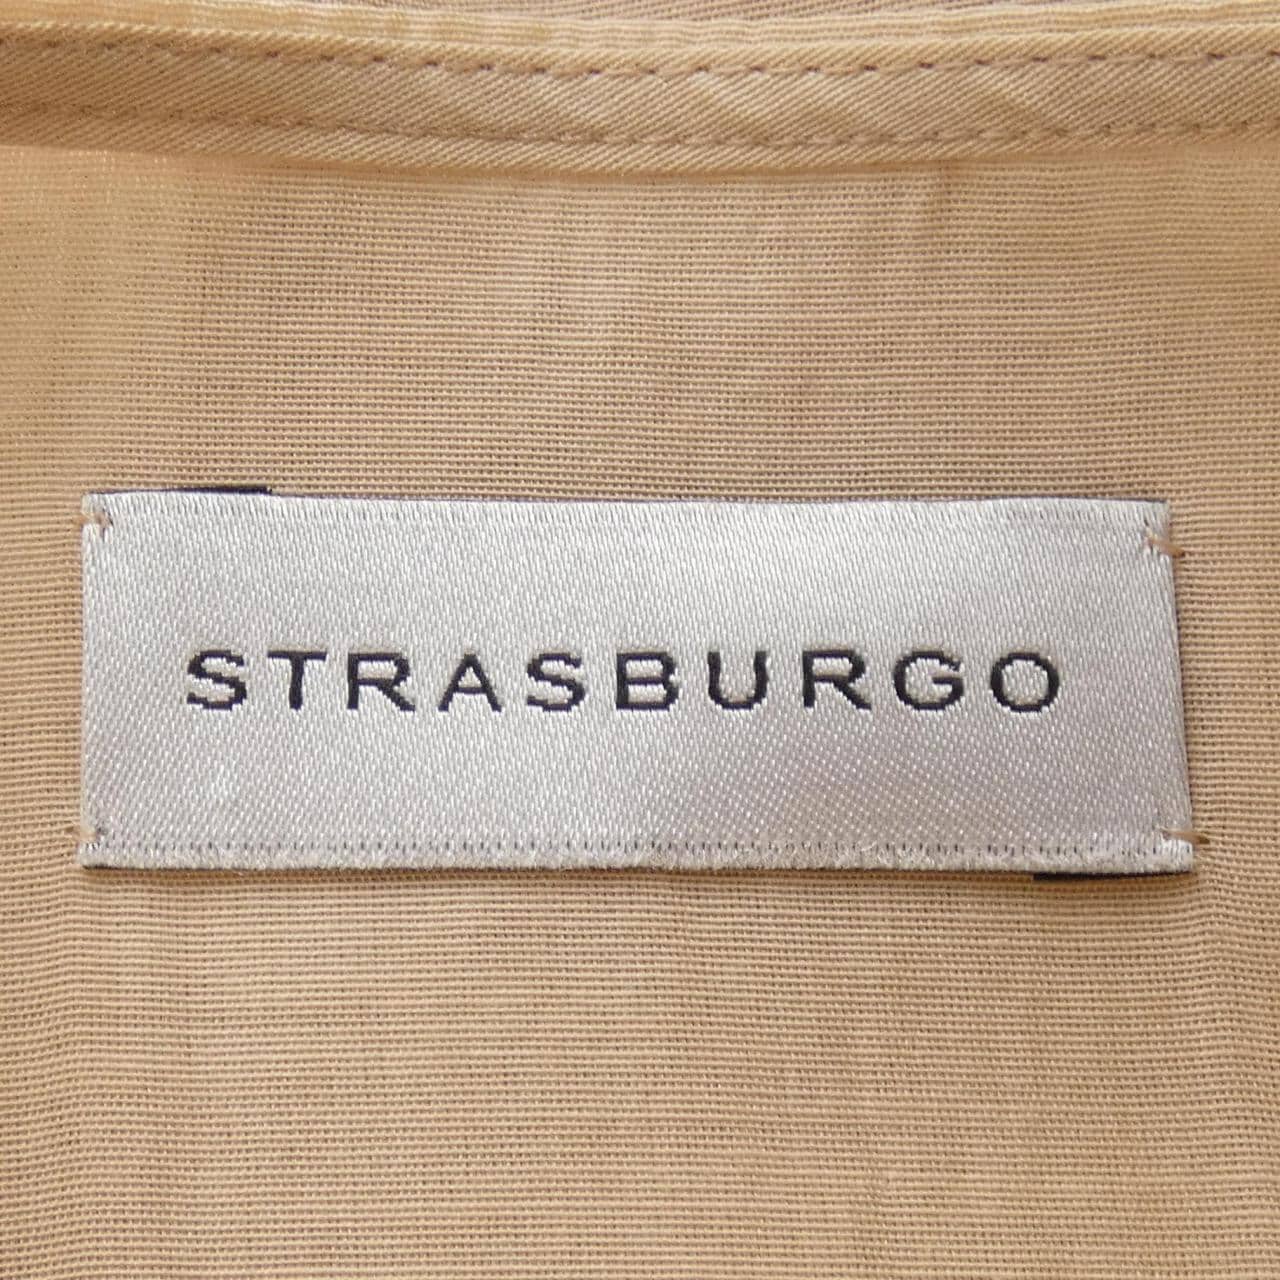 ストラスブルゴ STRASBURGO シャツ